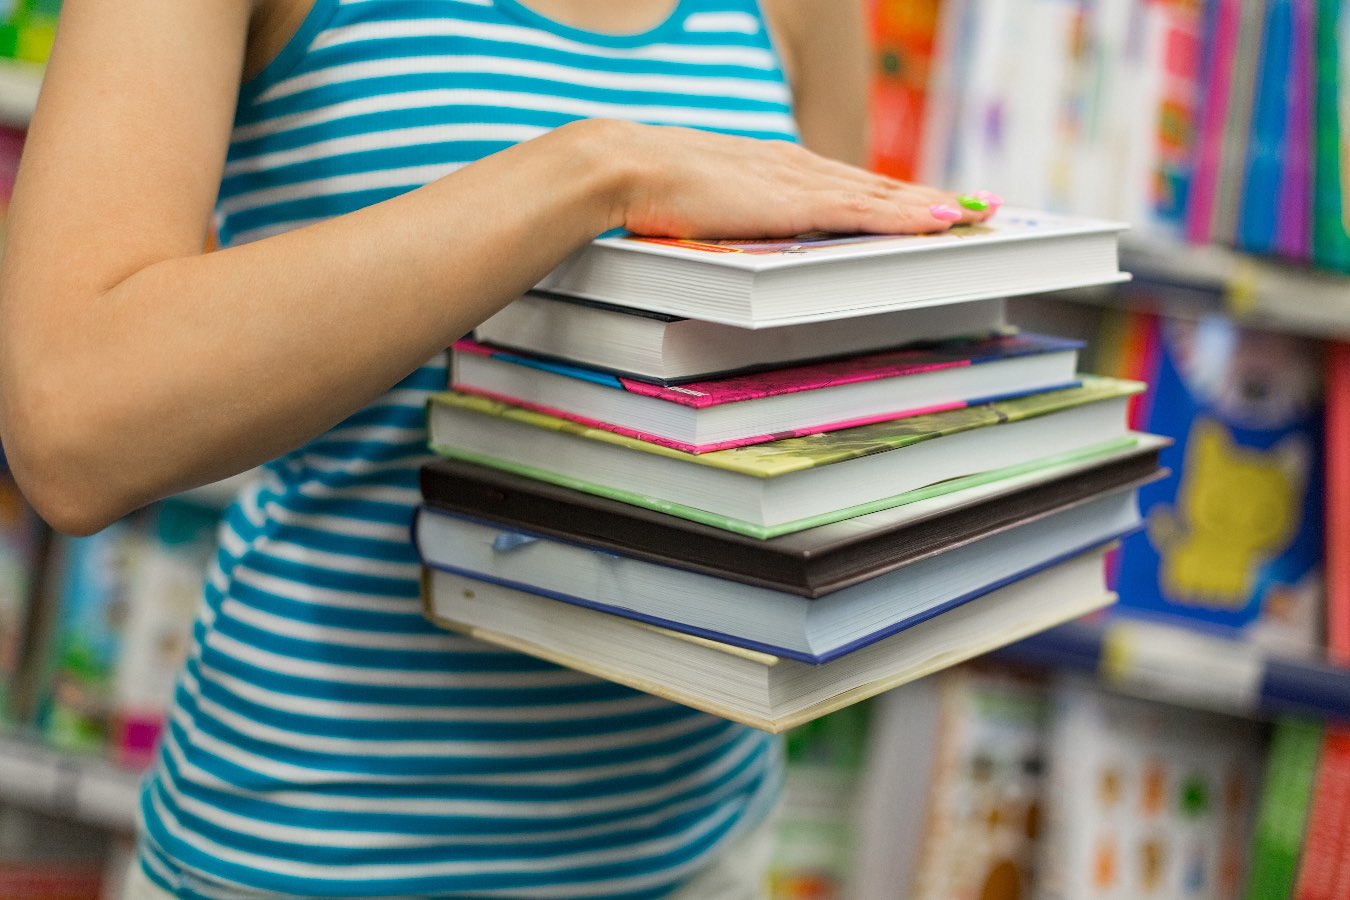 Szkolne wydatki bez stresu, czyli jak kupować taniej podręczniki szkolne